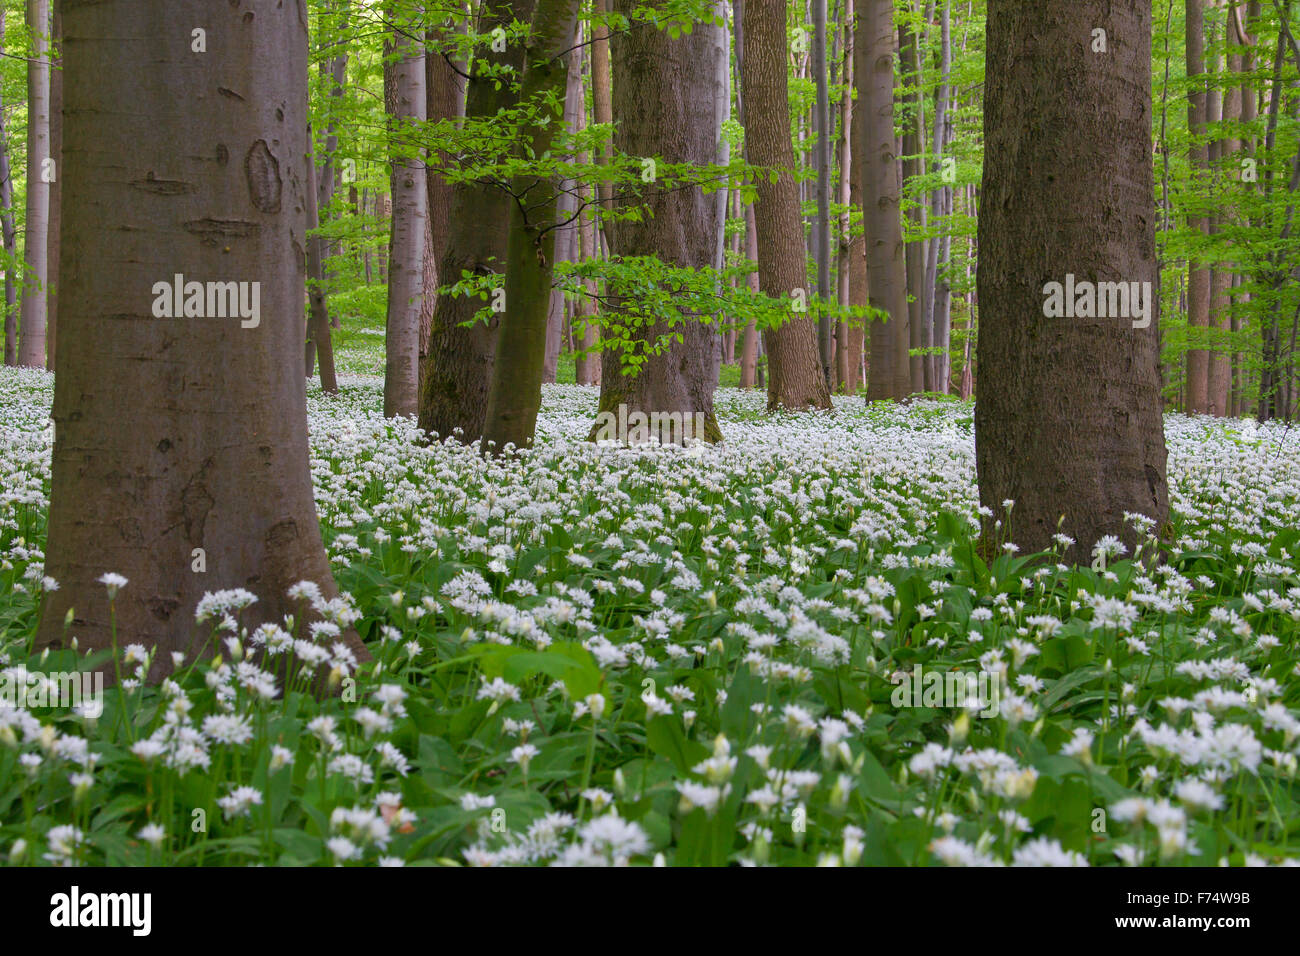 Holz-Knoblauch / Bärlauch / Bärlauch (Allium Ursinum) Blüte in Buchenwald im Frühjahr, Nationalpark Hainich, Thüringen Stockfoto